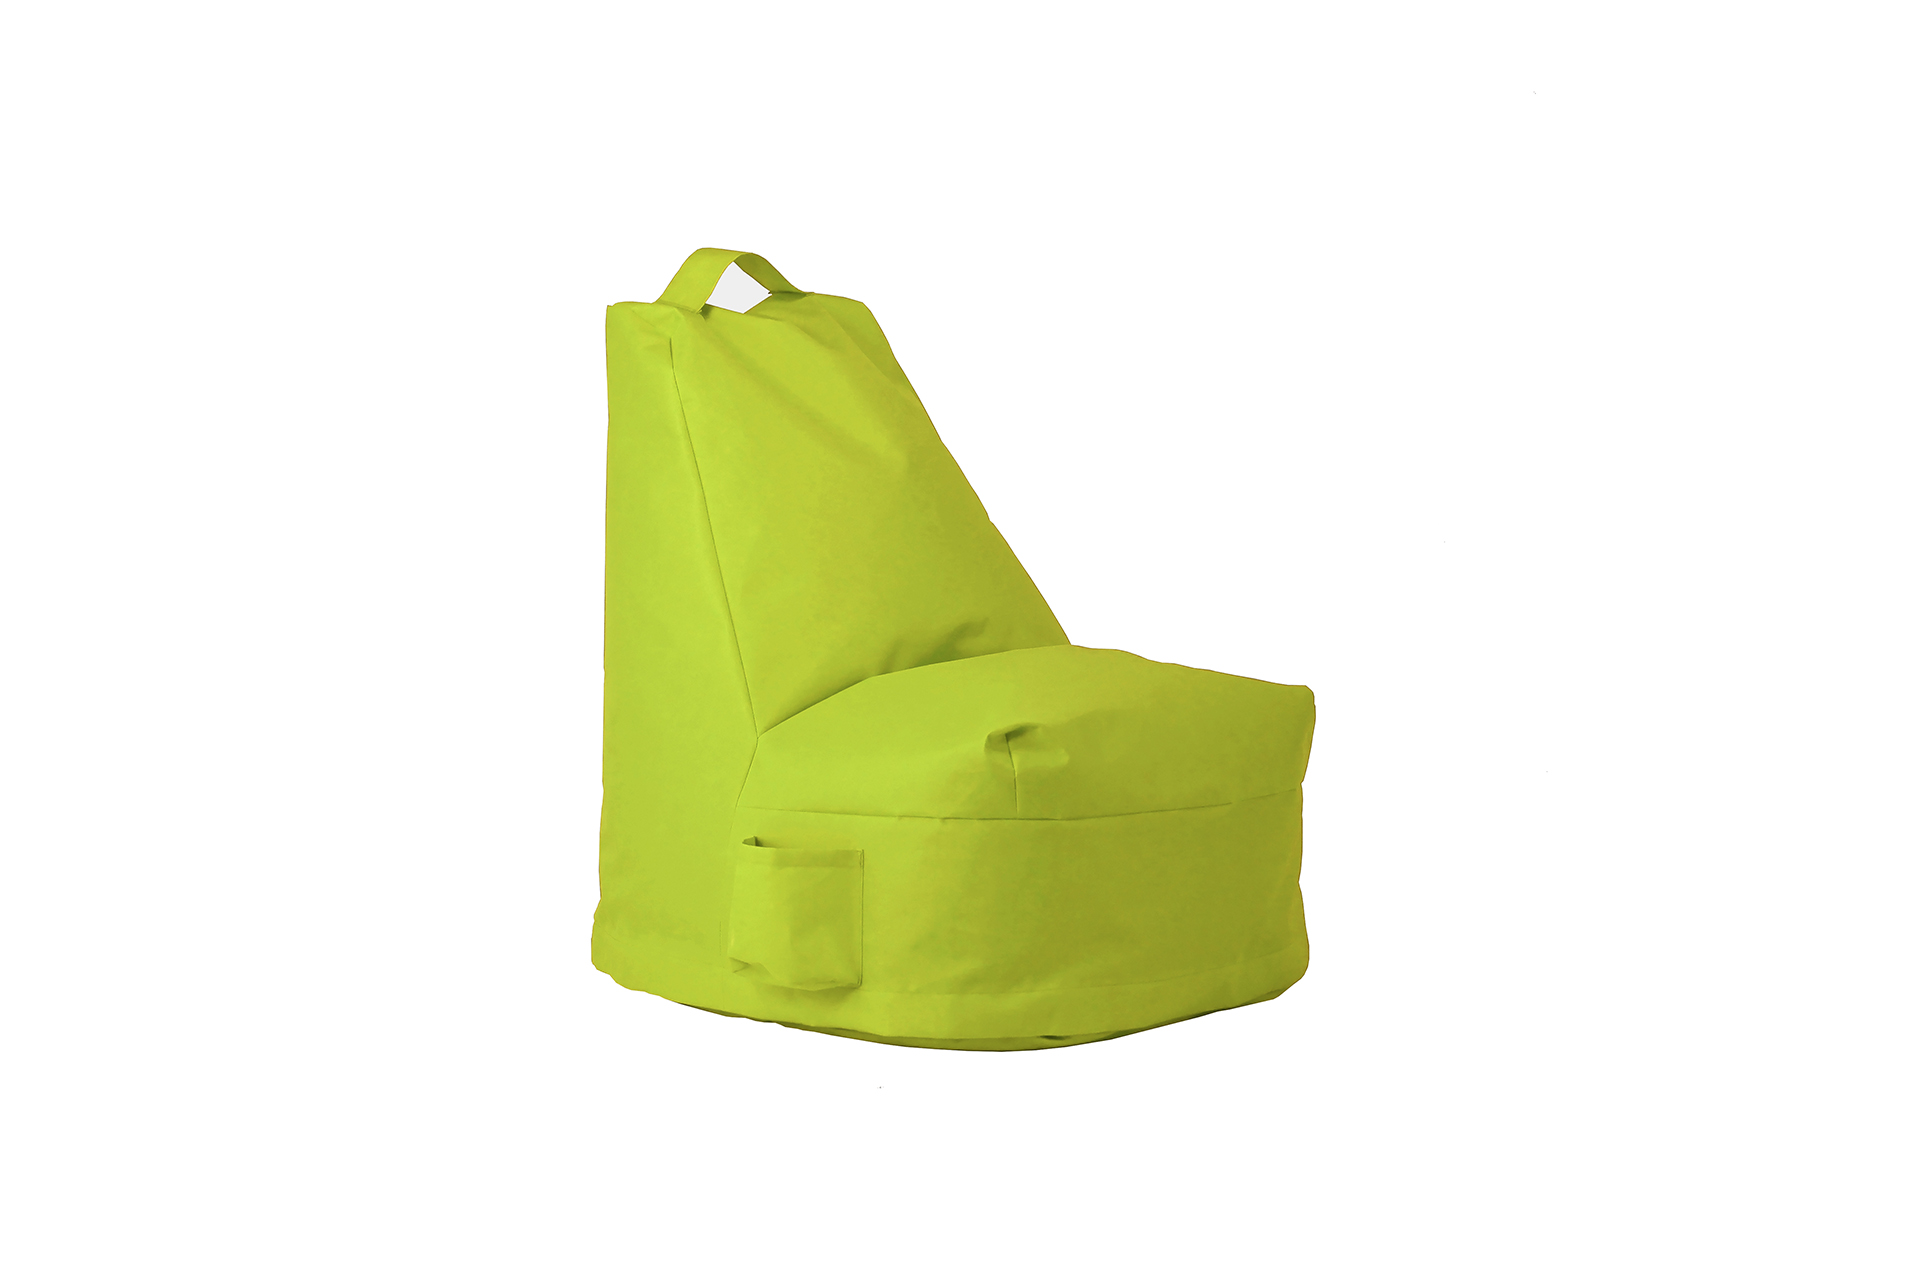 Pienessä L-tuolissa saa ryhdikkään asennon, sillä tuoli tukee istujan selkää ja jalkoja.